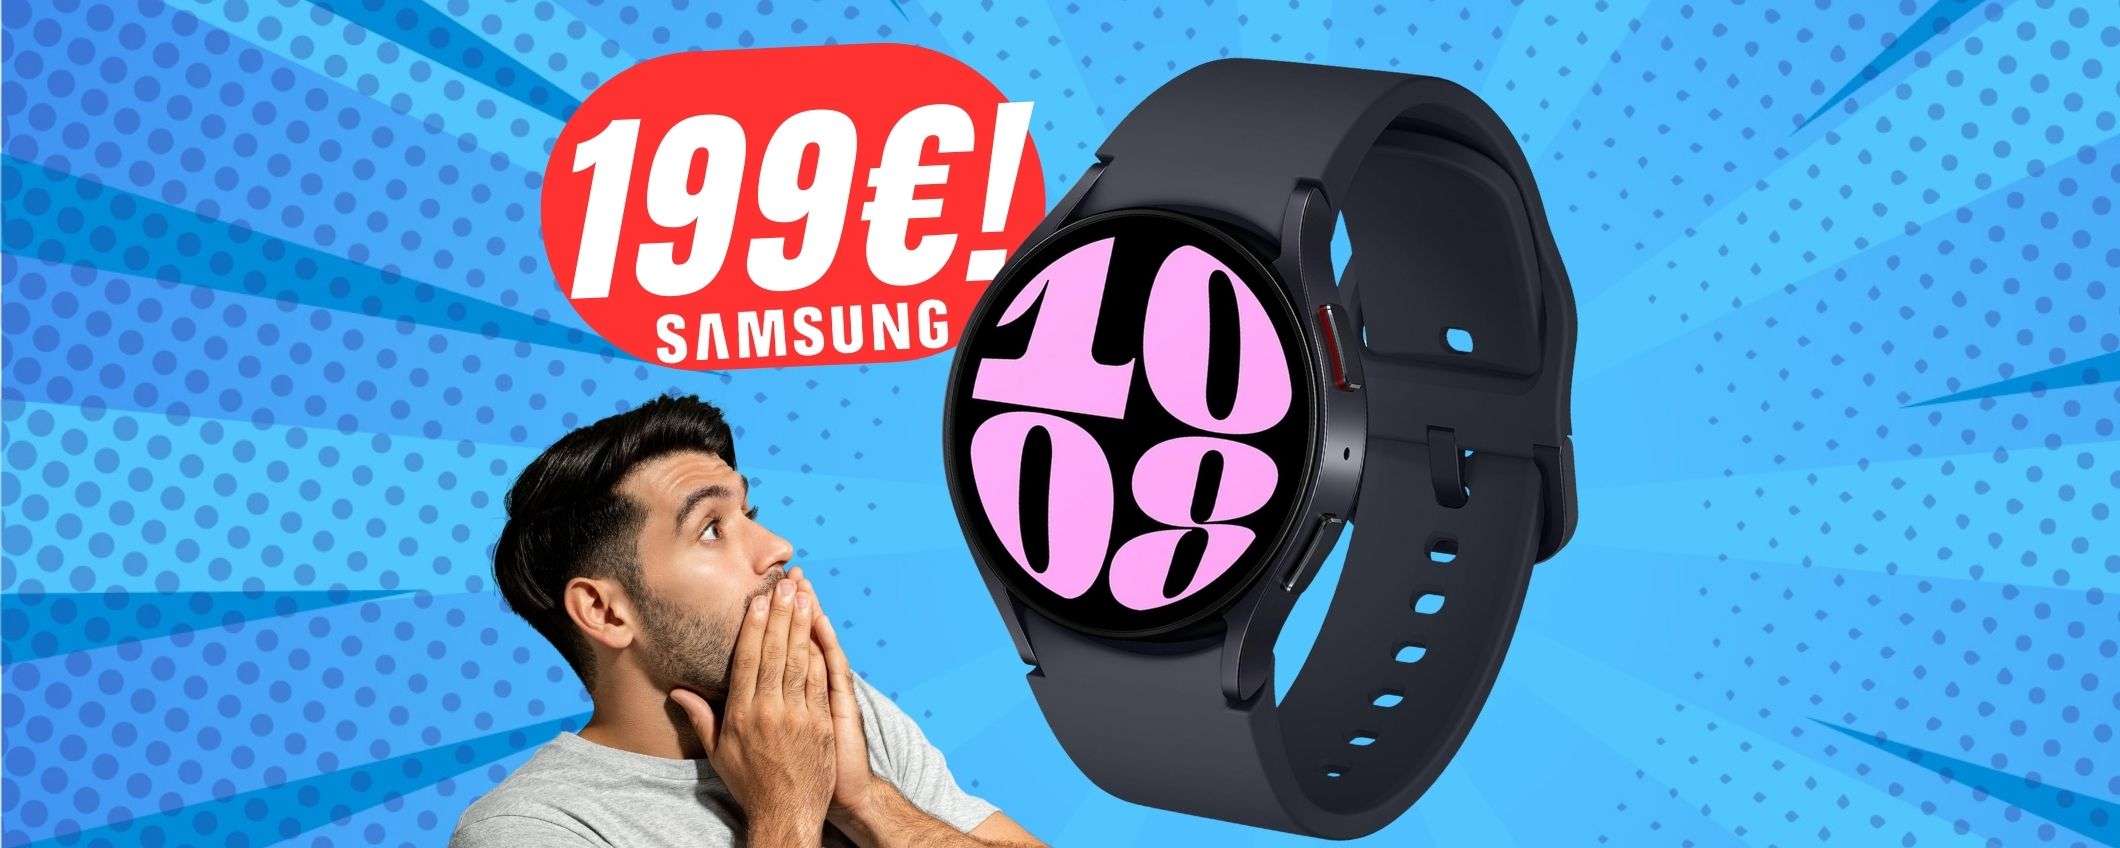 A 199€ non puoi avere smartwatch migliore di questo (ed è SAMSUNG)!